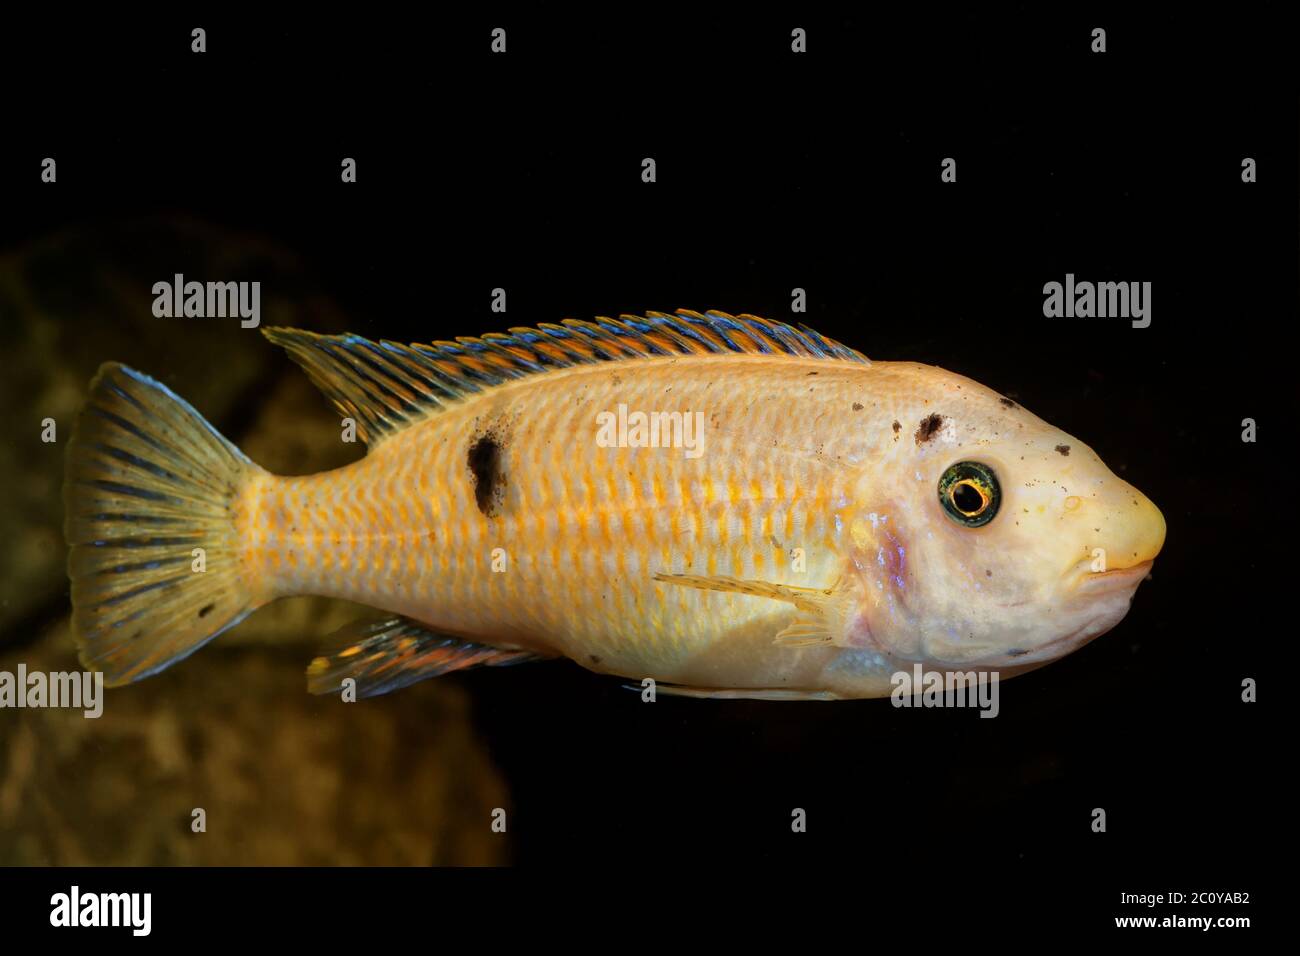 Cichlid fish in a aquarium Stock Photo